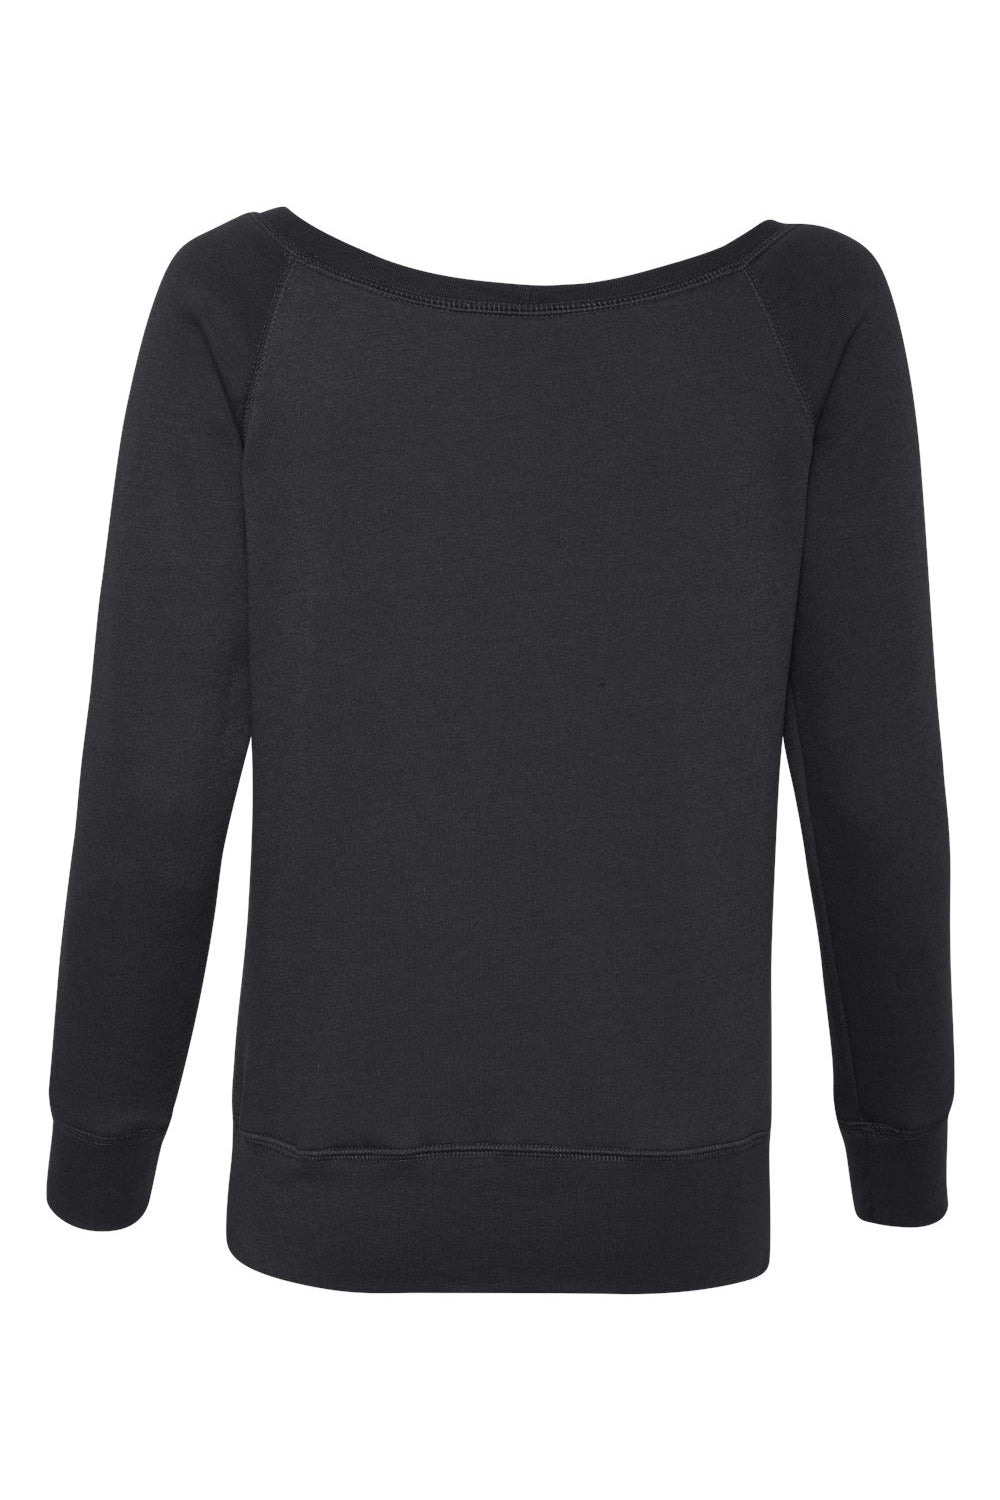 Bella + Canvas 7501 Womens Sponge Fleece Wide Neck Sweatshirt Black Flat Back